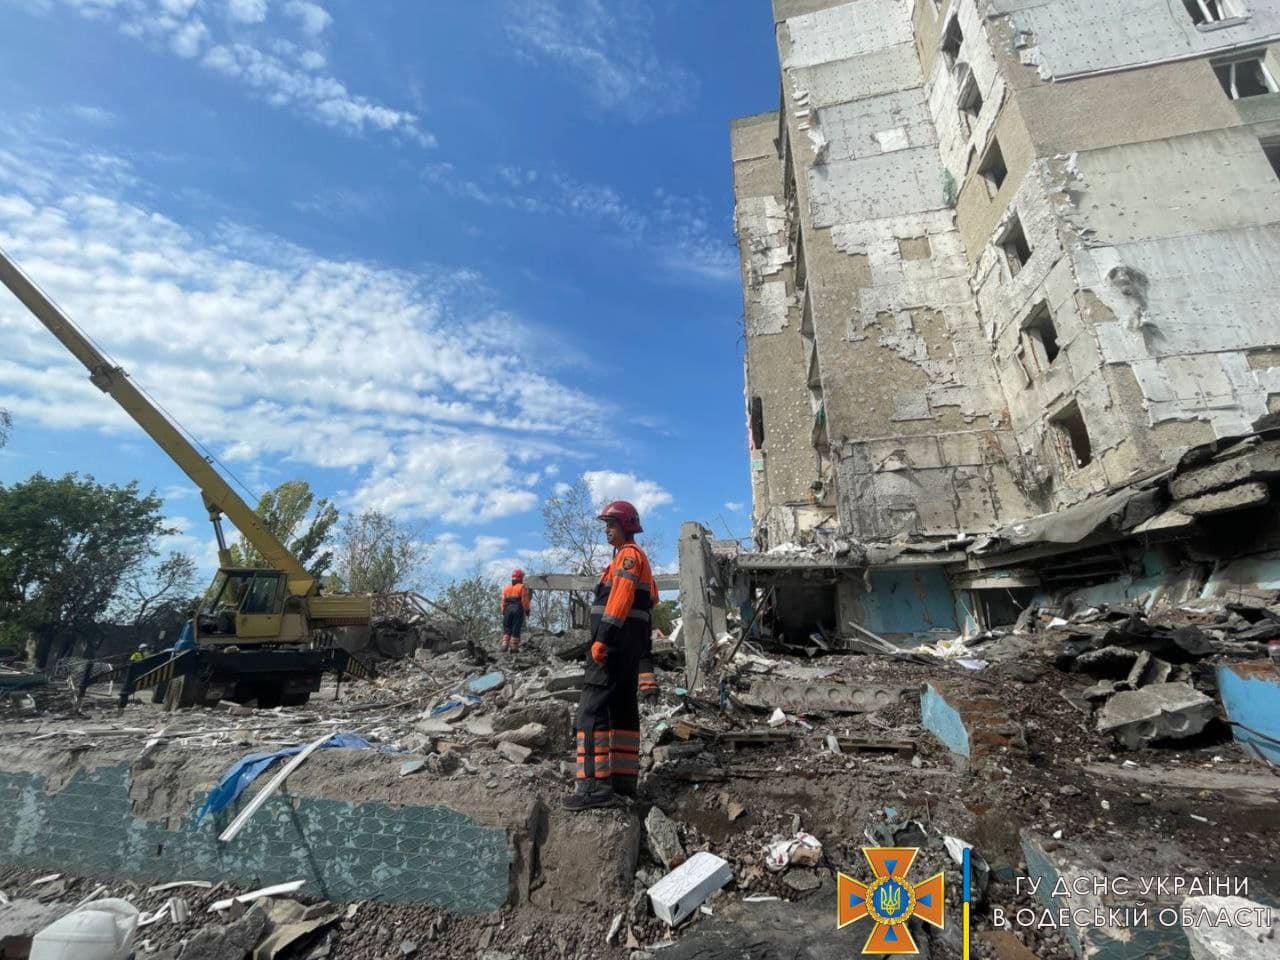 Odeský región, v ktorom záchranári stále pracujú na eliminácií dôsledkov bombardovania